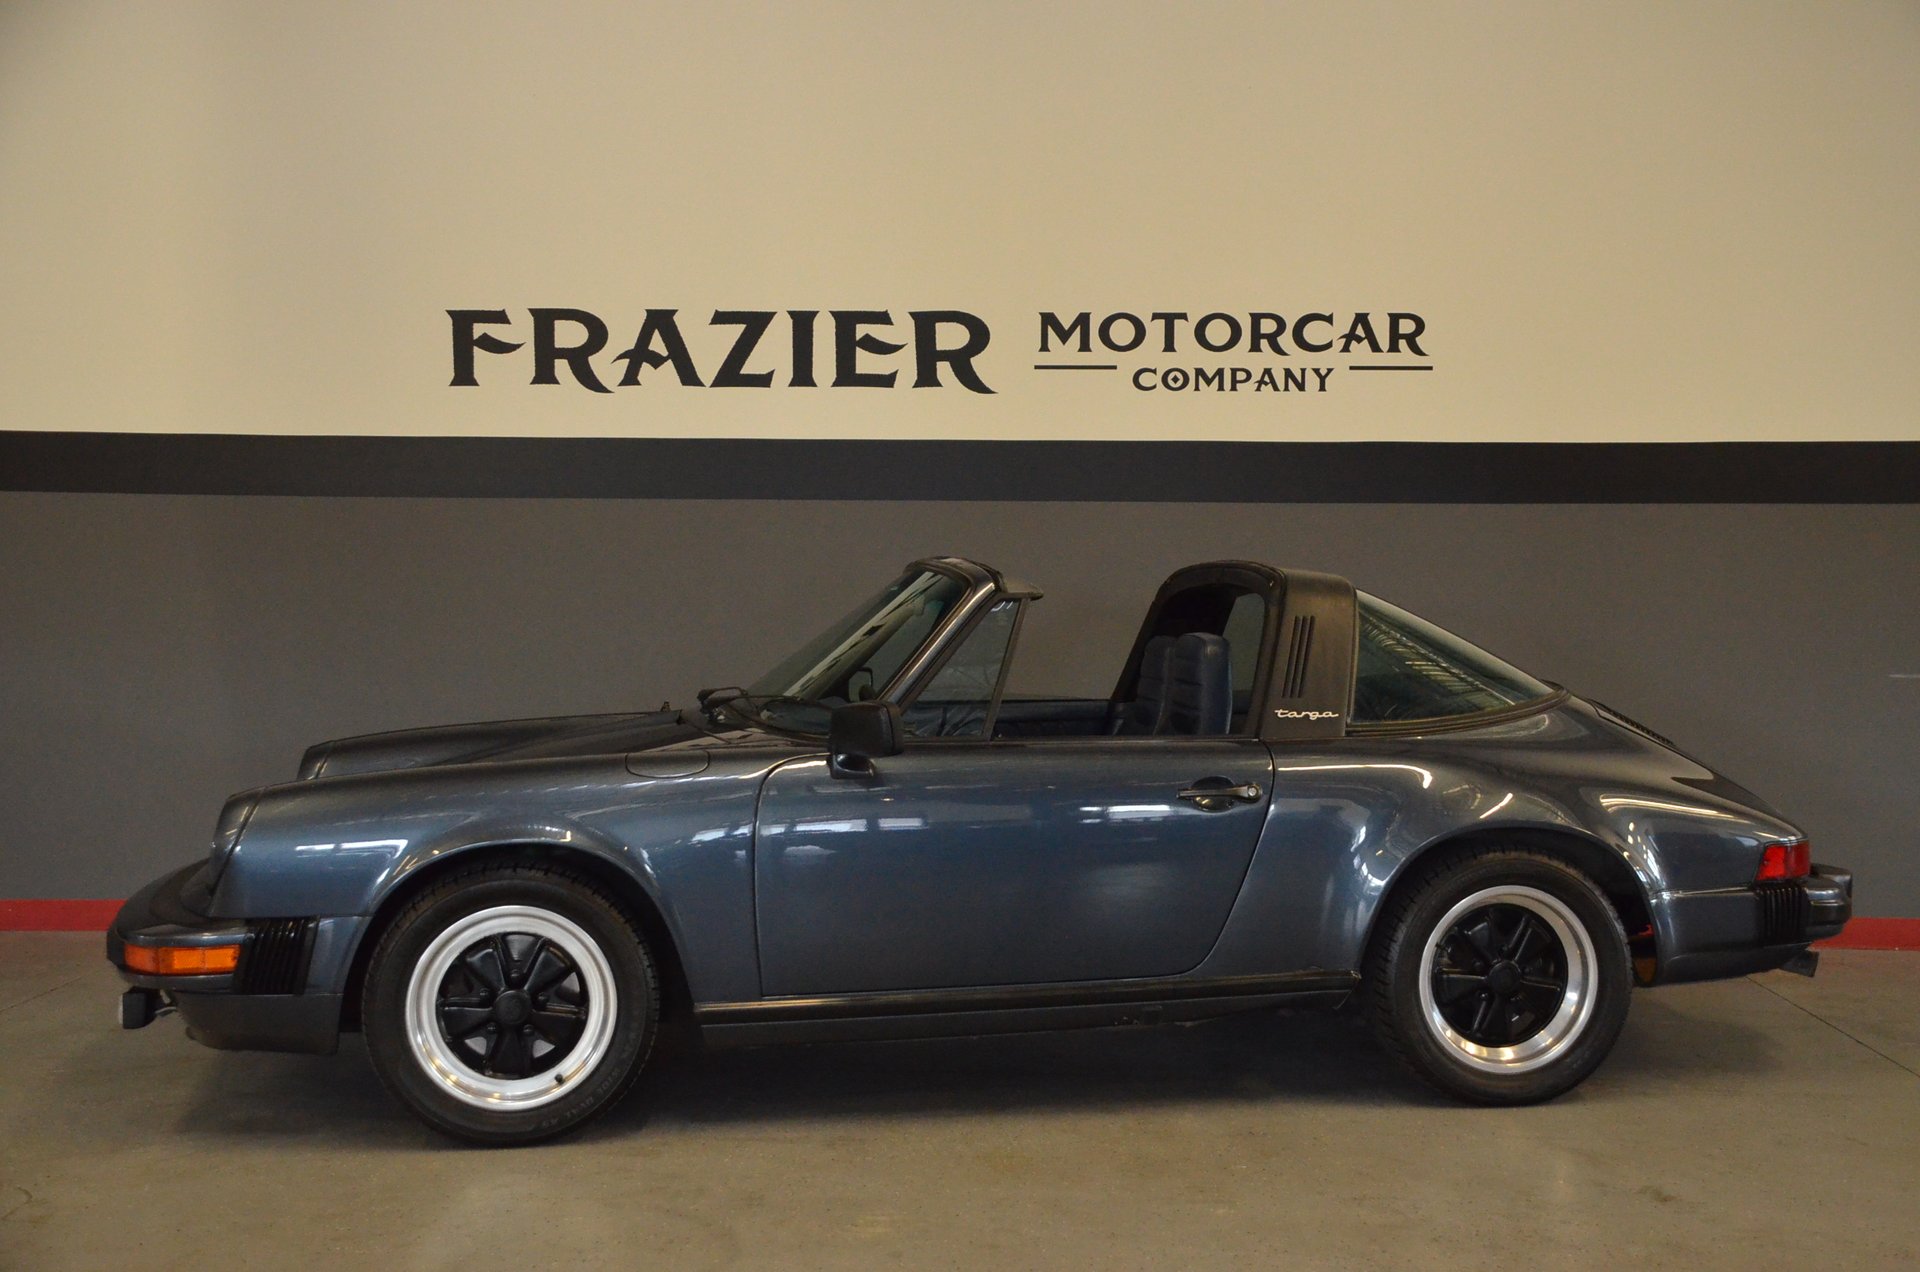 1981 Porsche 911 SC | Frazier Motorcar Company